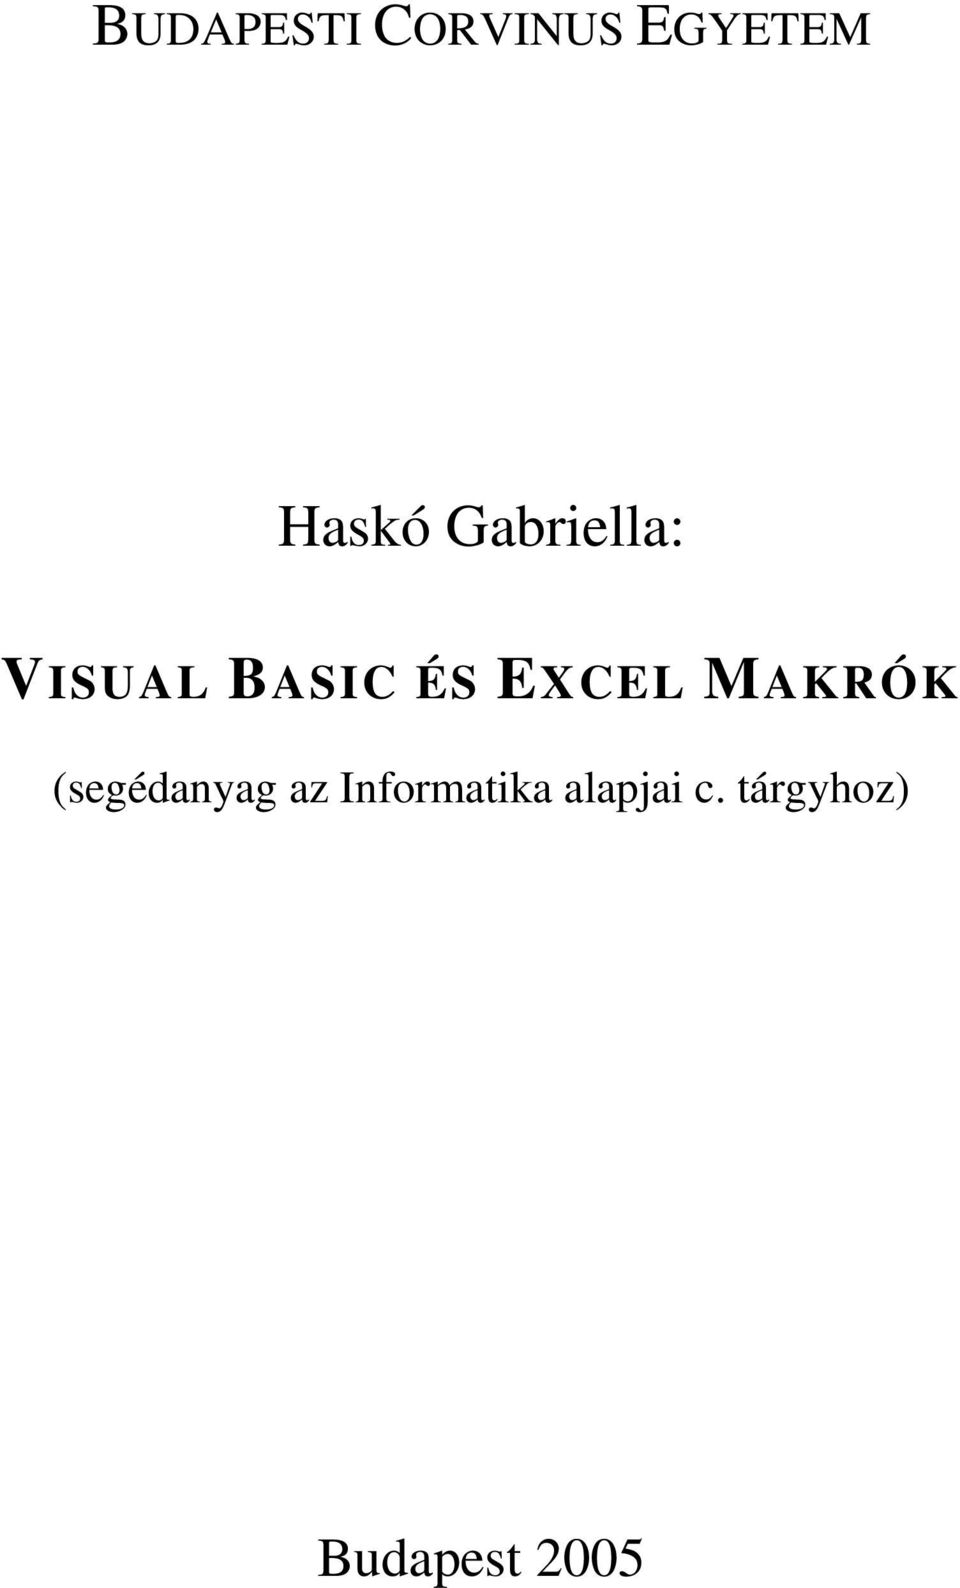 BUDAPESTI CORVINUS EGYETEM. Haskó Gabriella: VISUAL BASIC ÉS EXCEL MAKRÓK.  (segédanyag az Informatika alapjai c. tárgyhoz) - PDF Free Download